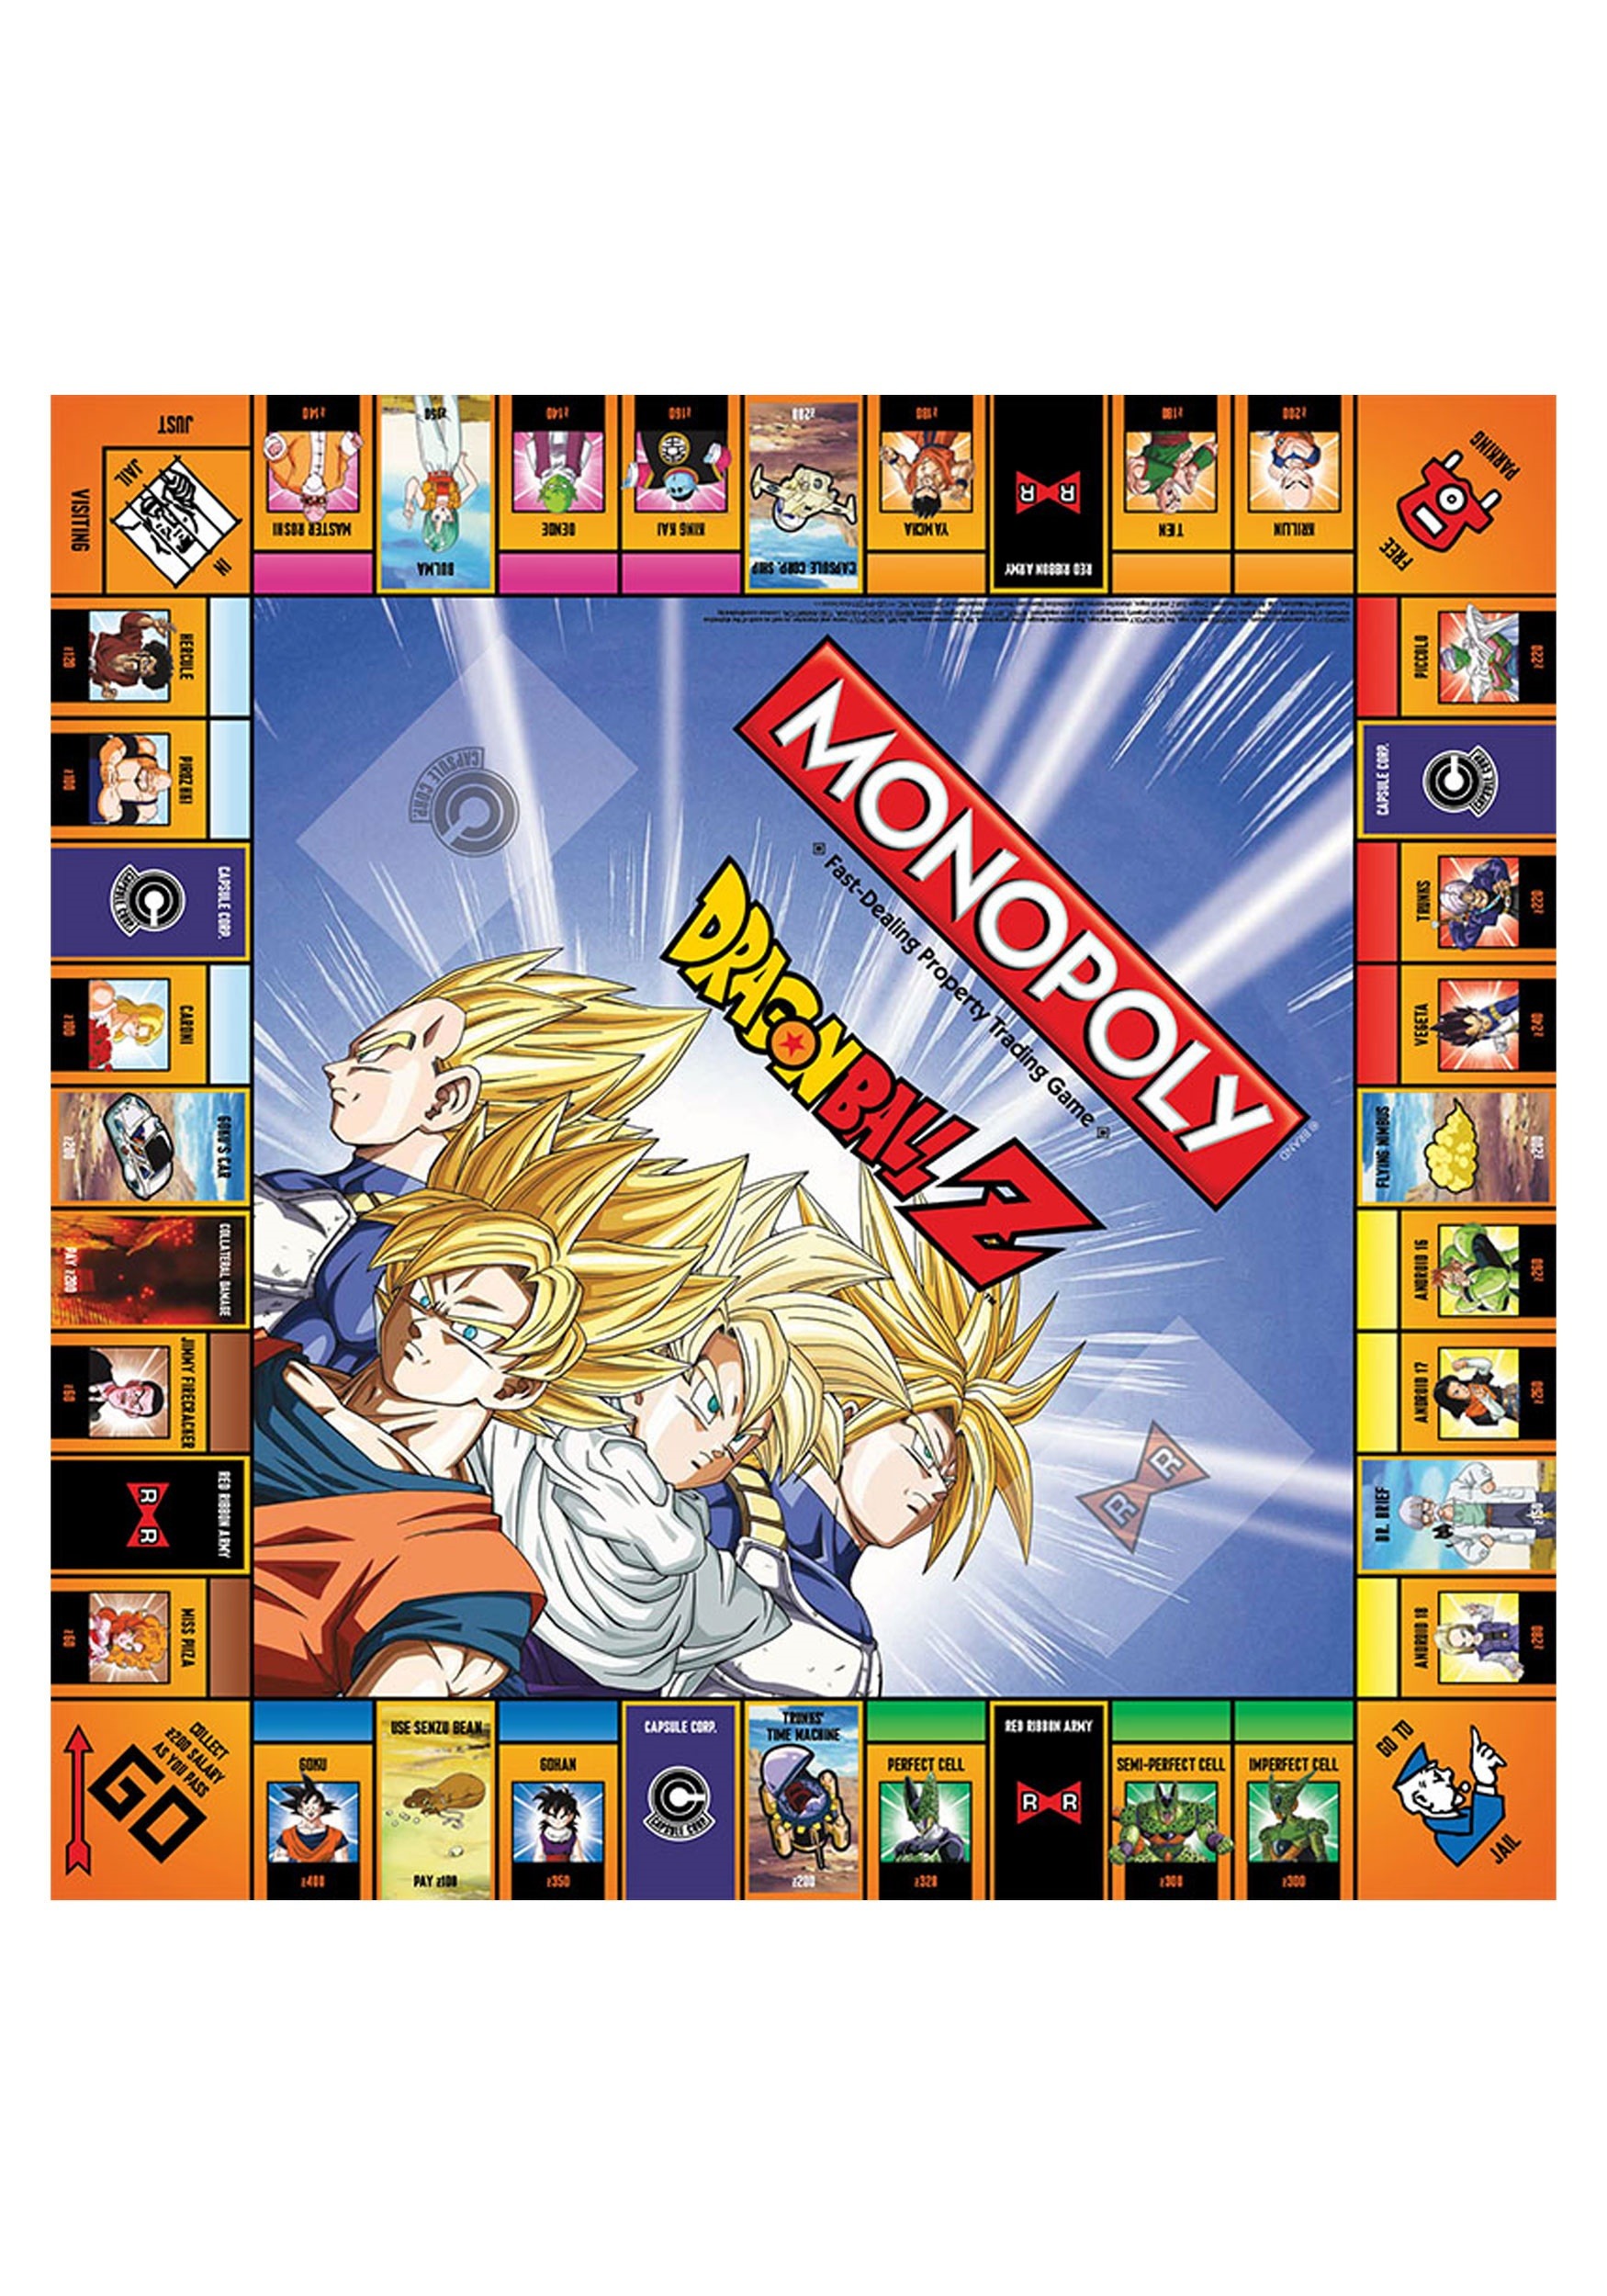 monopoly-dragon-ball-z-board-game3.jpg